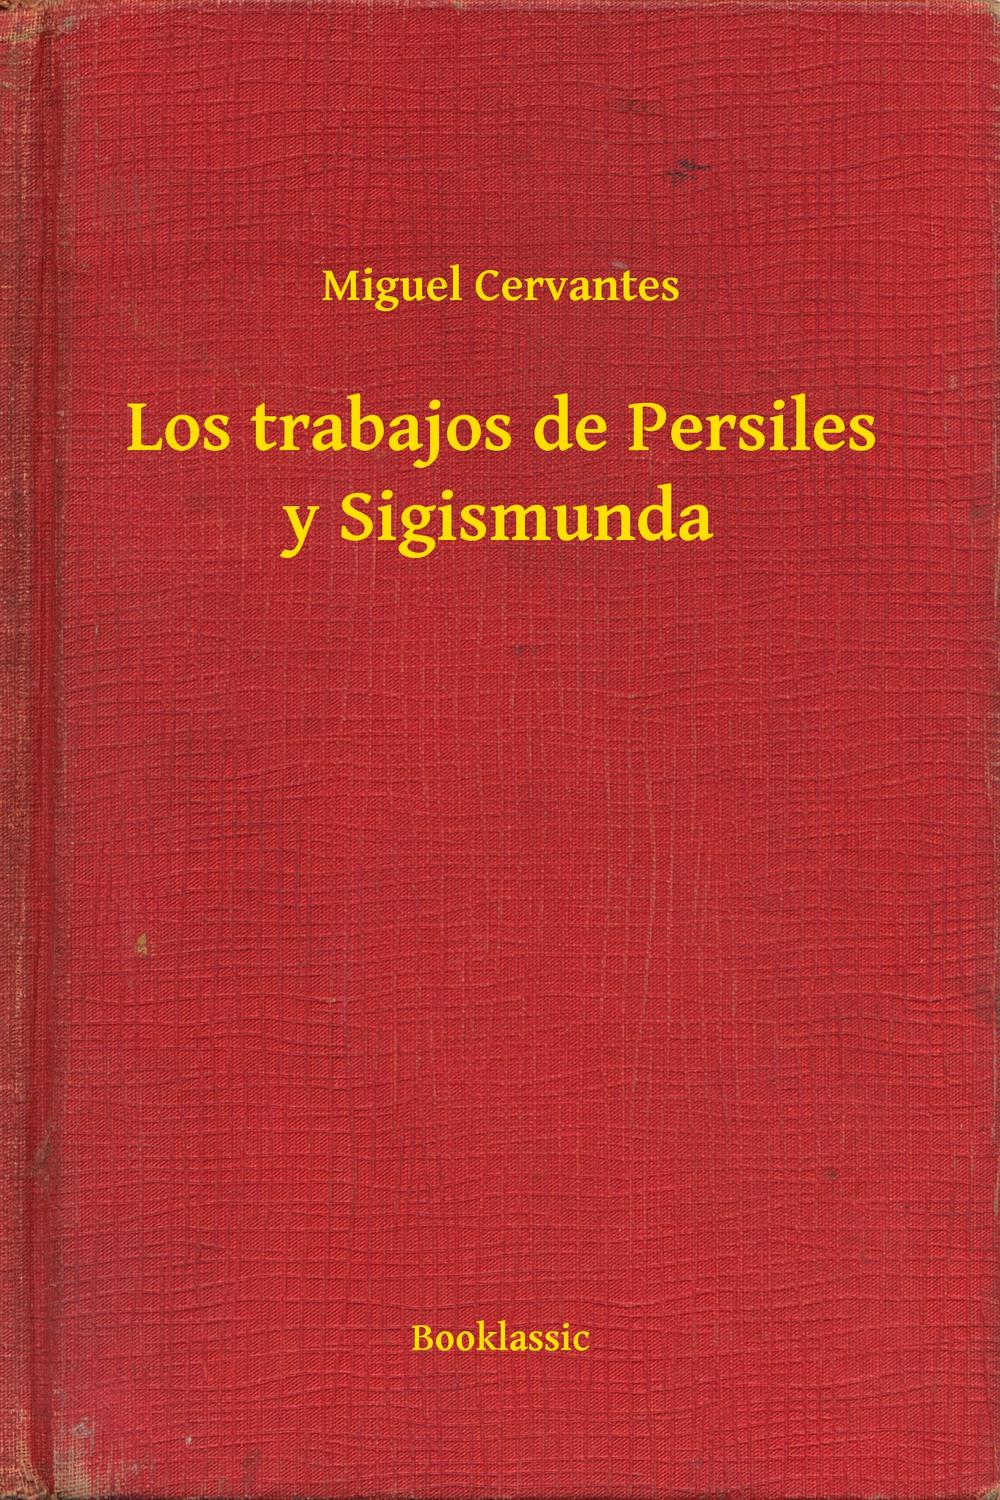 Los trabajos de Persiles y Sigismunda - Miguel Cervantes,,